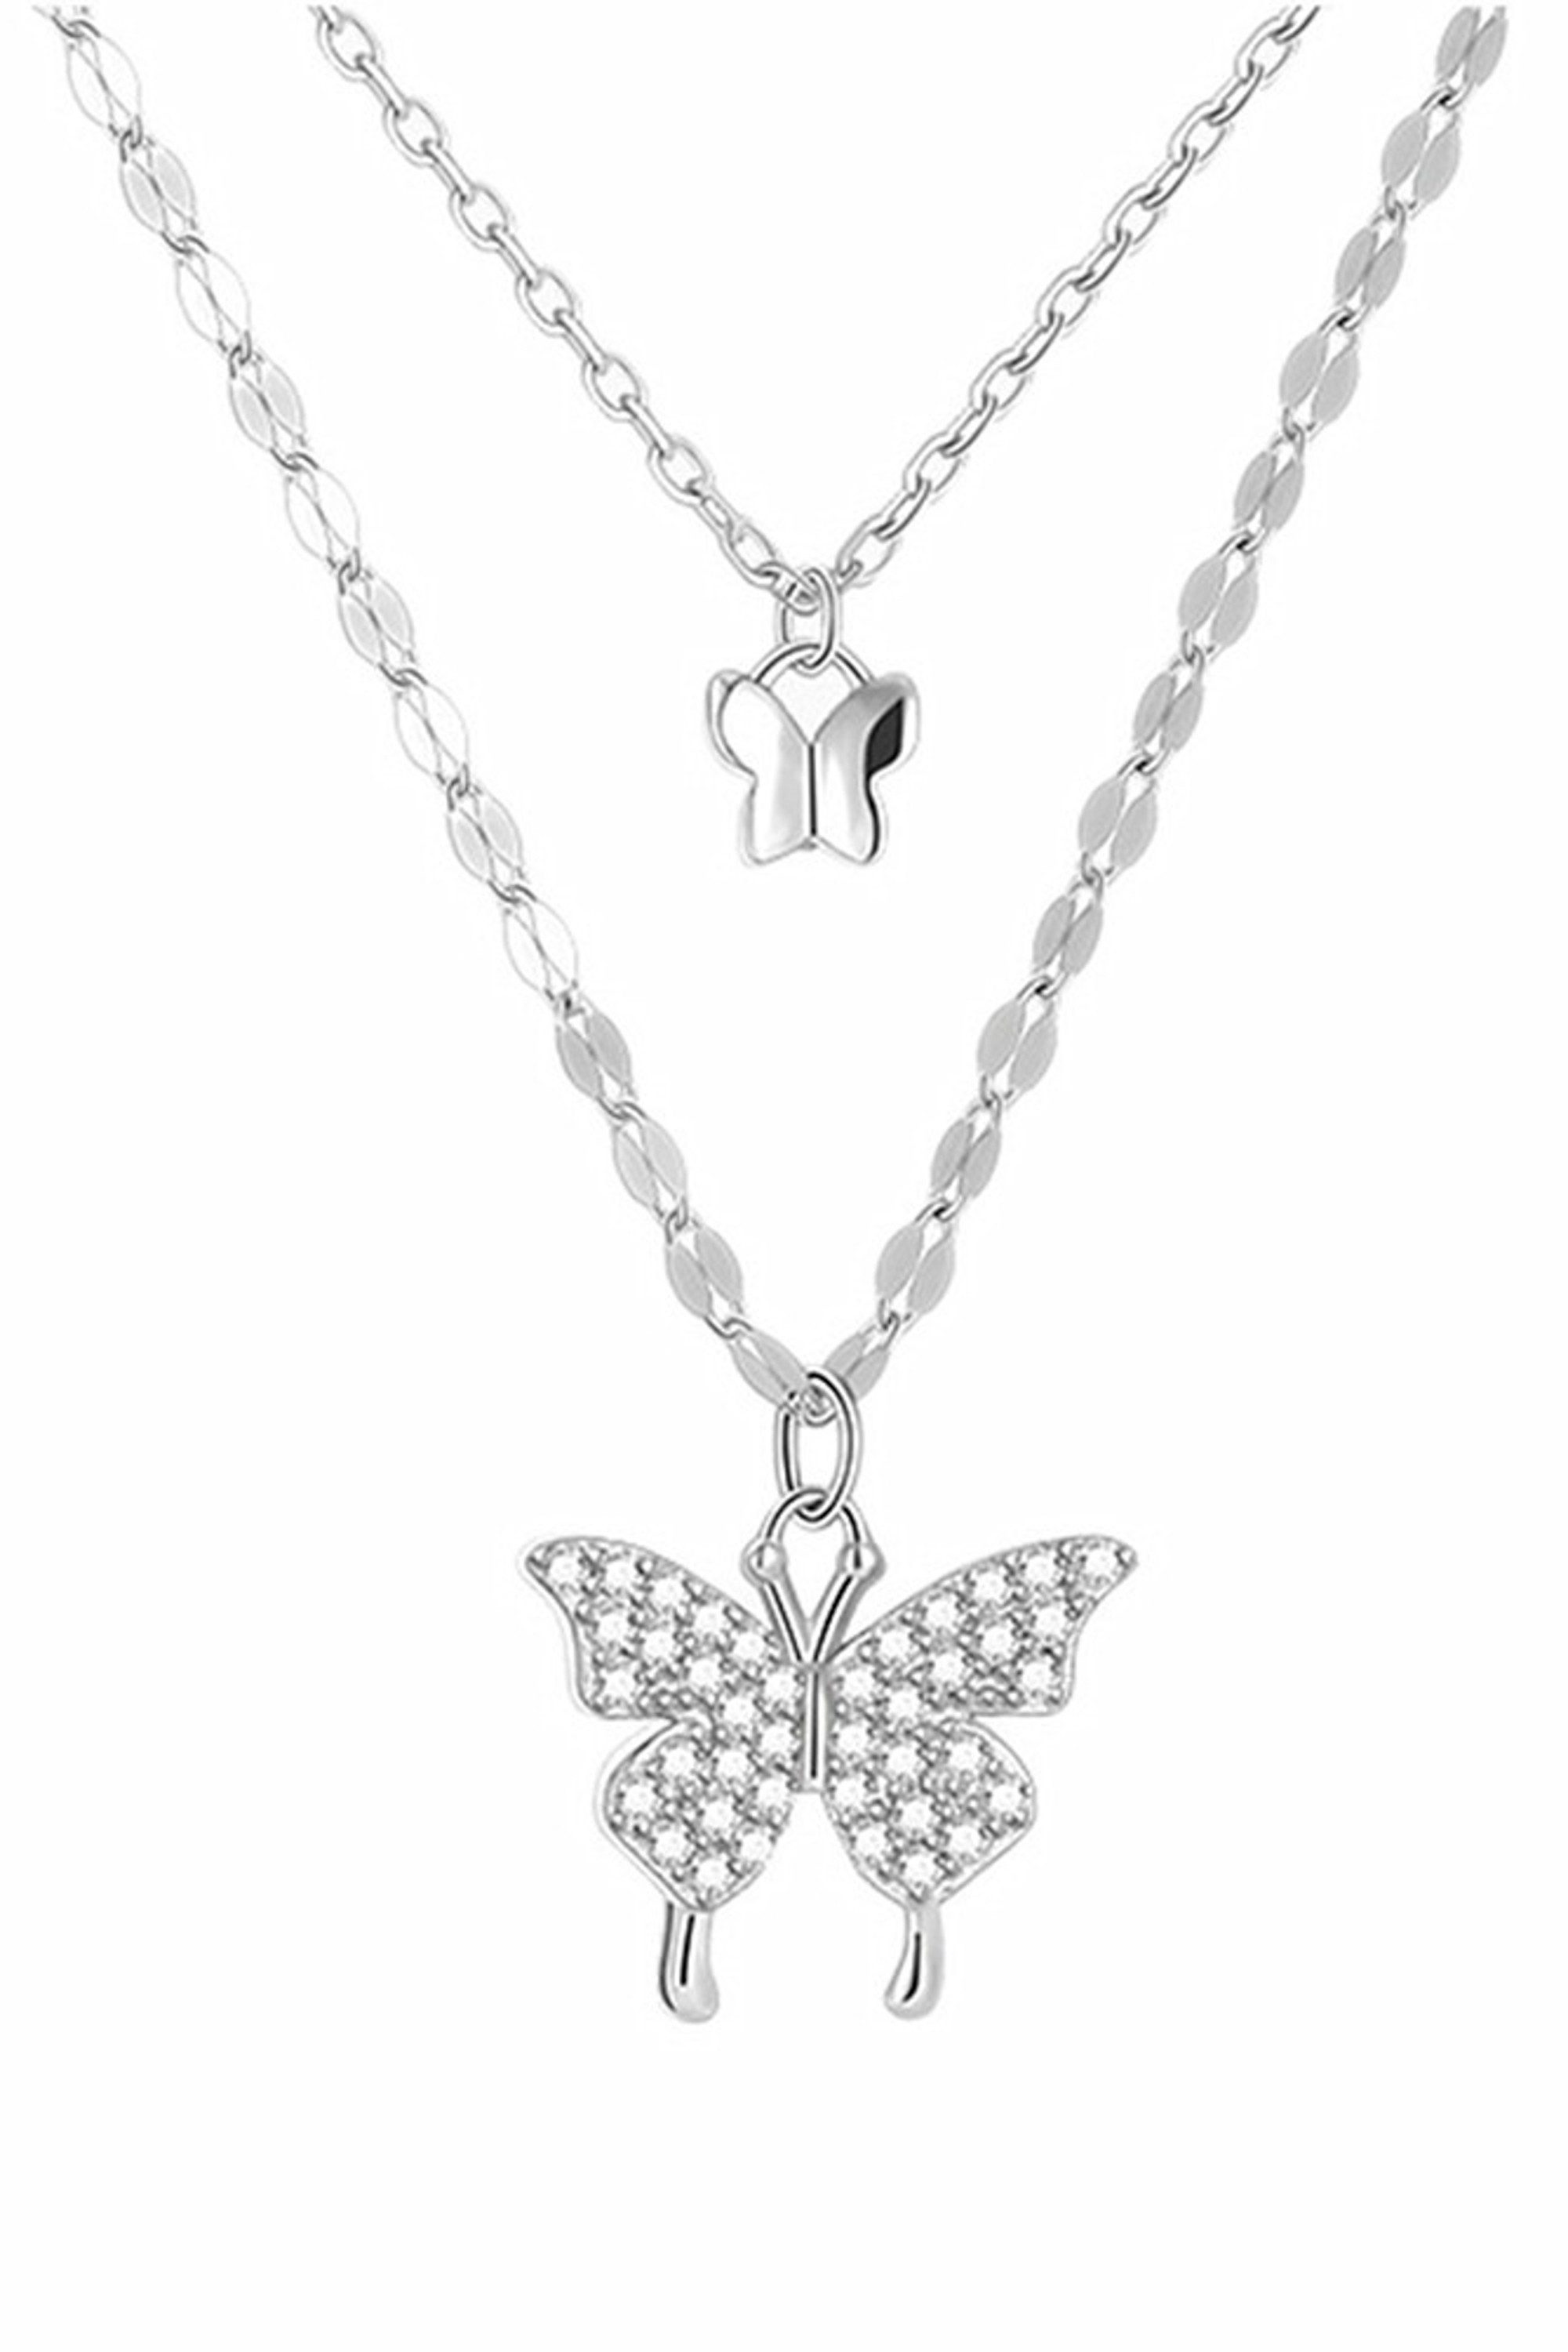 COLLEZIONE ALESSANDRO Silberkette Butterflies, aus 925 Sterling Silber